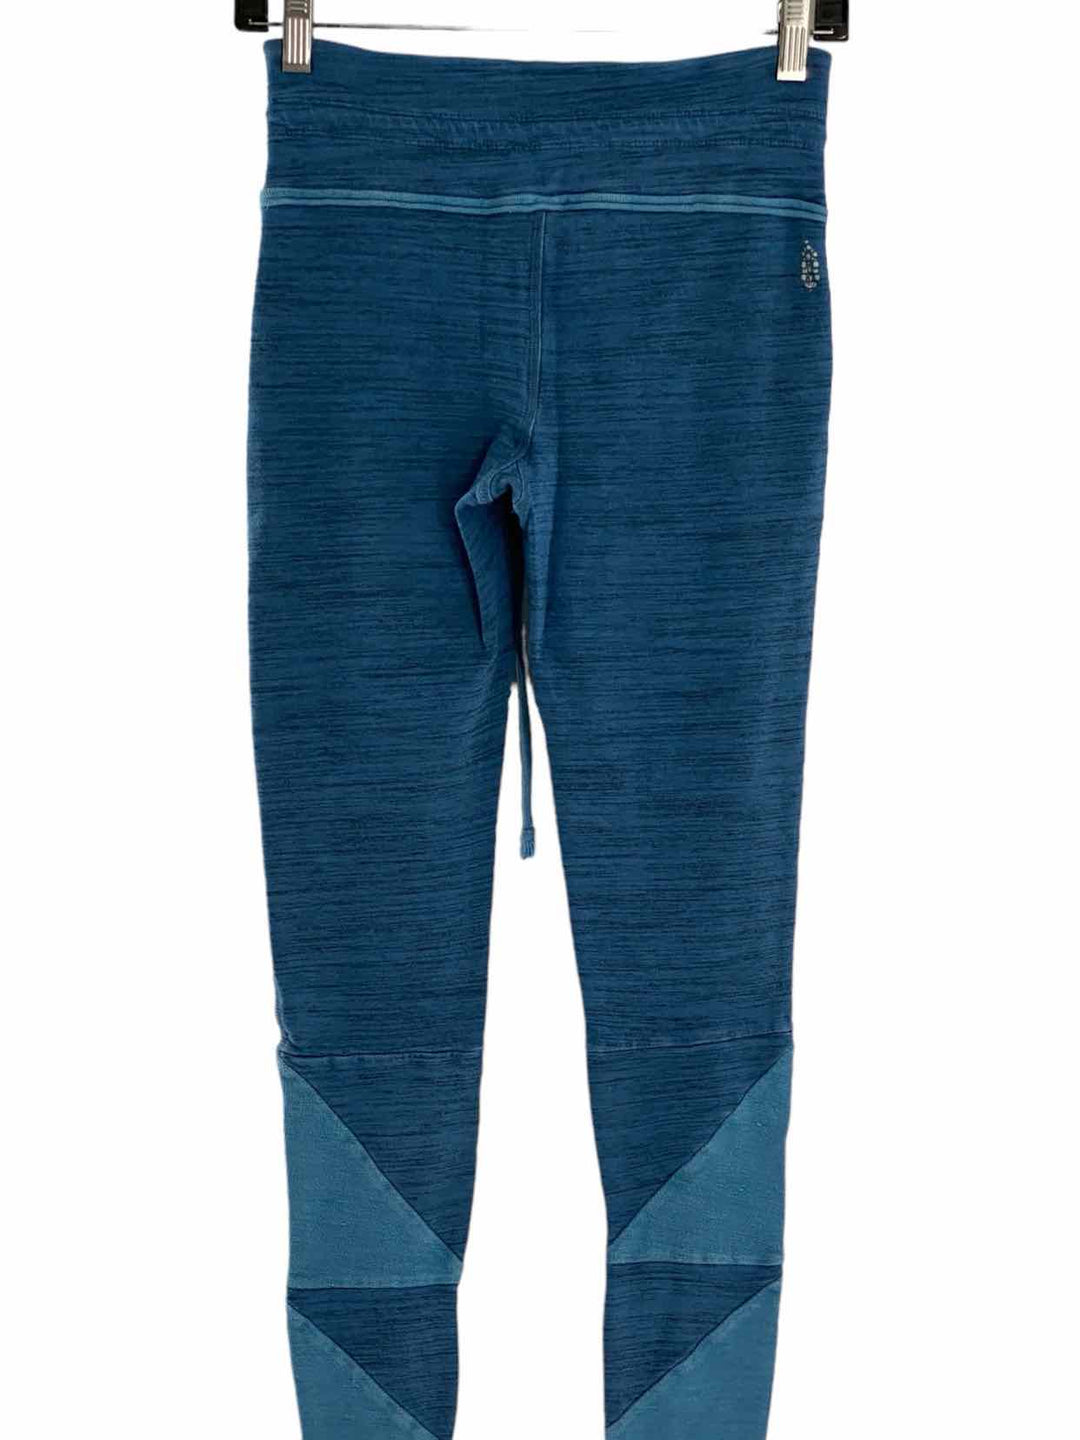 FP Movement Size XS Blue Athletic Pants